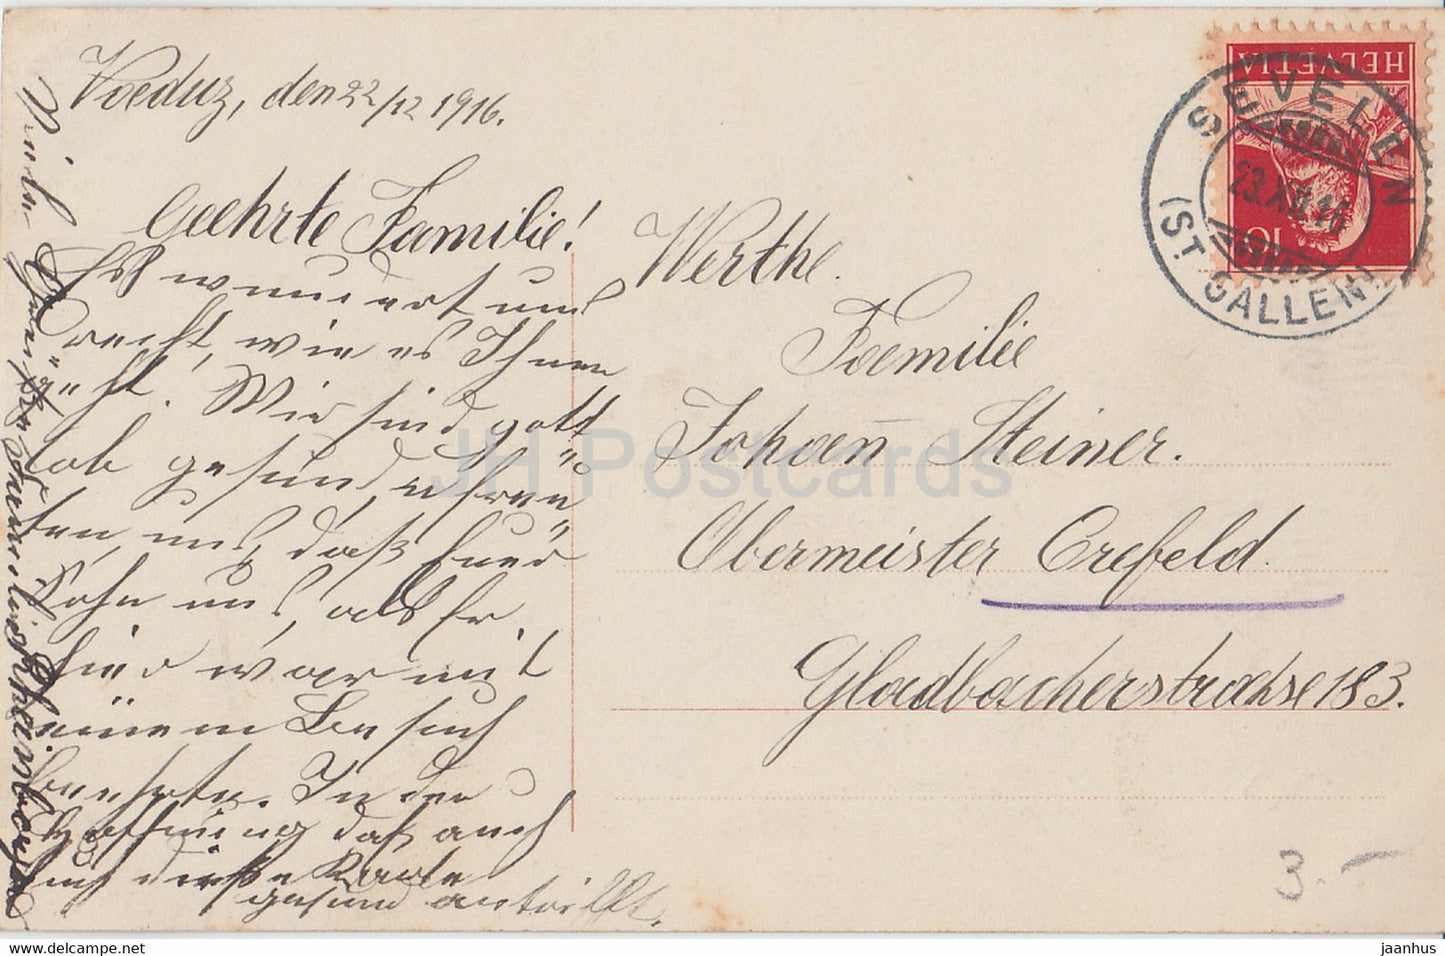 Carte de vœux du Nouvel An - Herzinnigen Gluckwinsche zum neuen Jahre - EAS 649/1 - carte postale ancienne - 1916 - Allemagne - utilisé